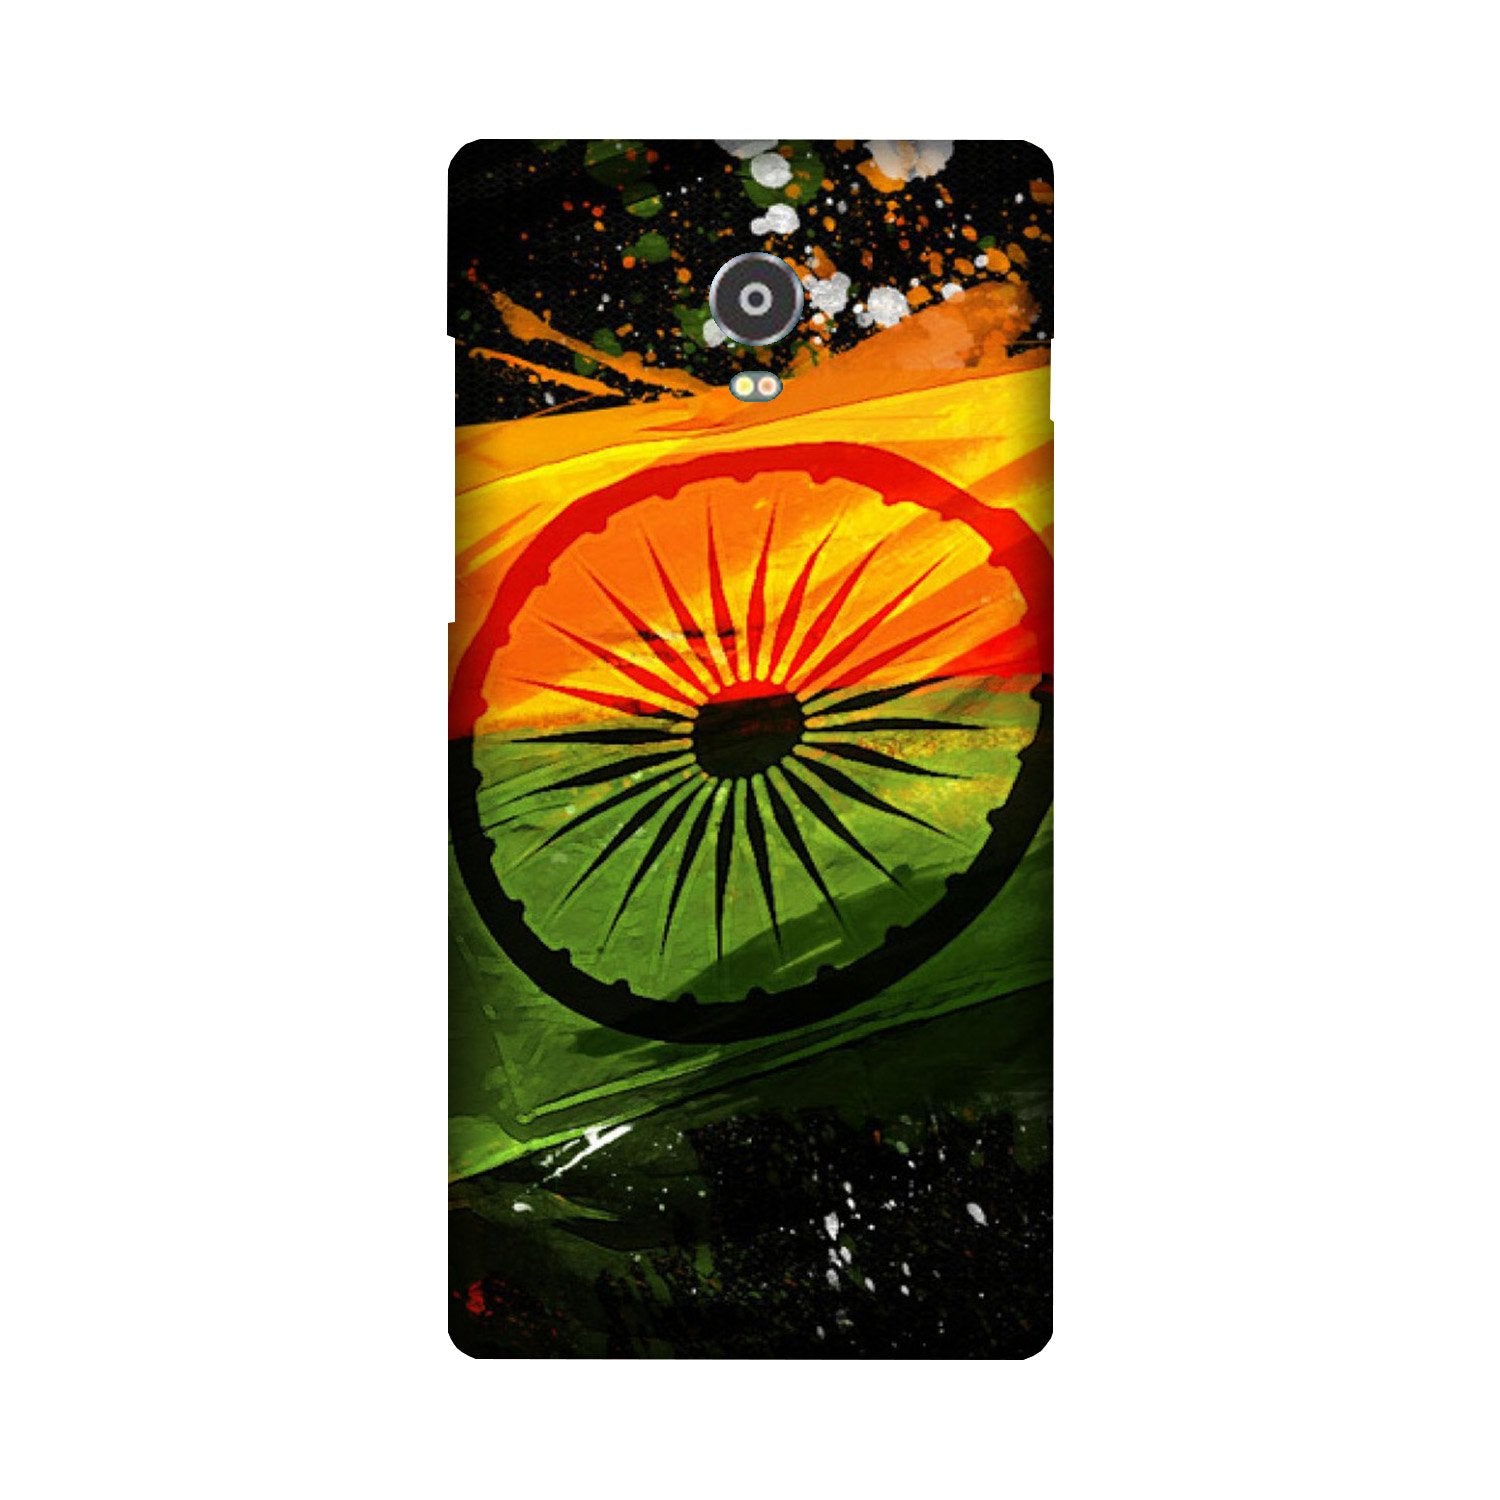 Indian Flag Case for Lenovo Vibe P1  (Design - 137)